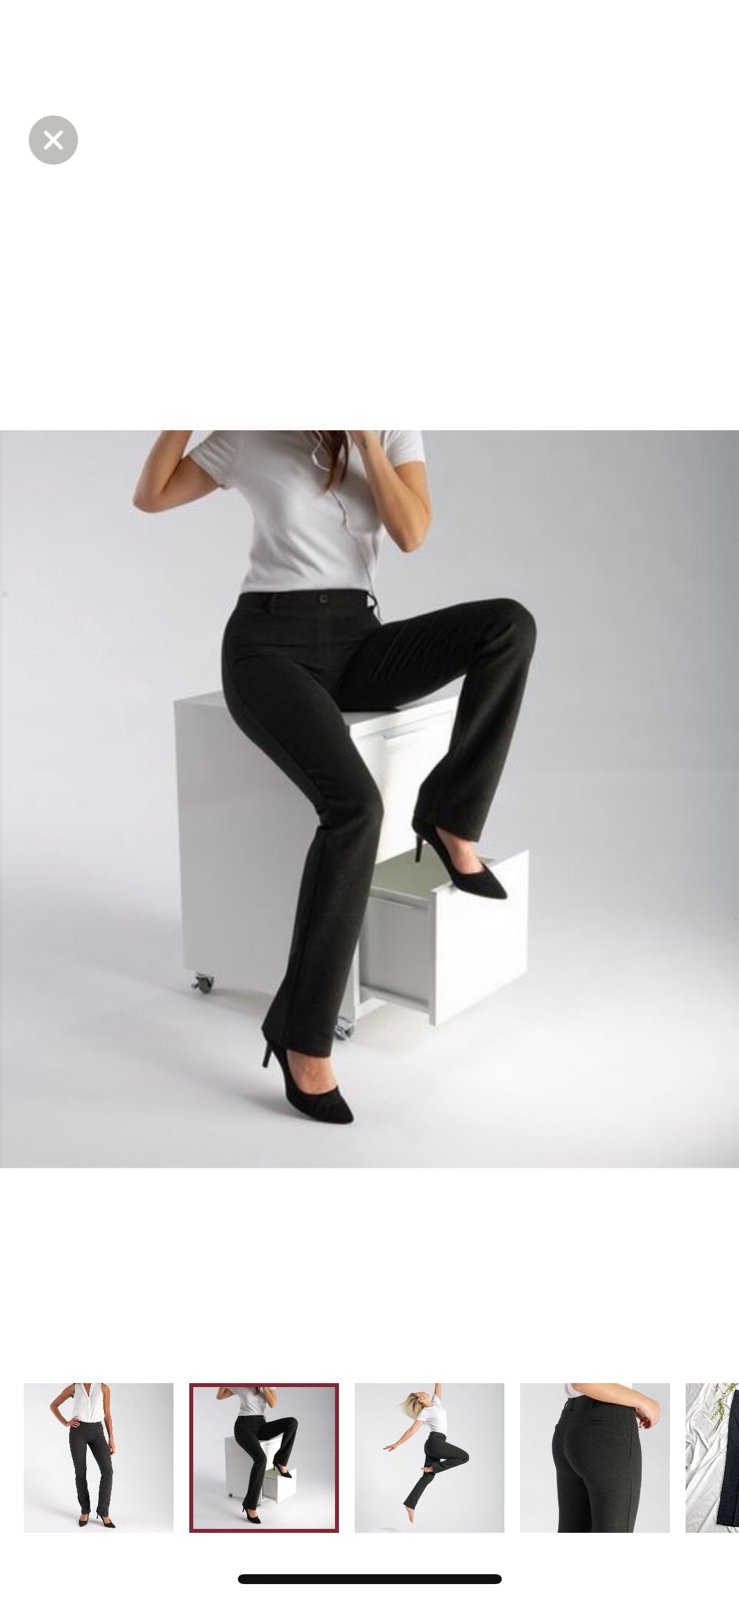 Stylish BETABRAND | Charcoal Gray Straight Leg Dress Yoga Pants Women’s Size L Petite phqLSHAOE Buying Cheap